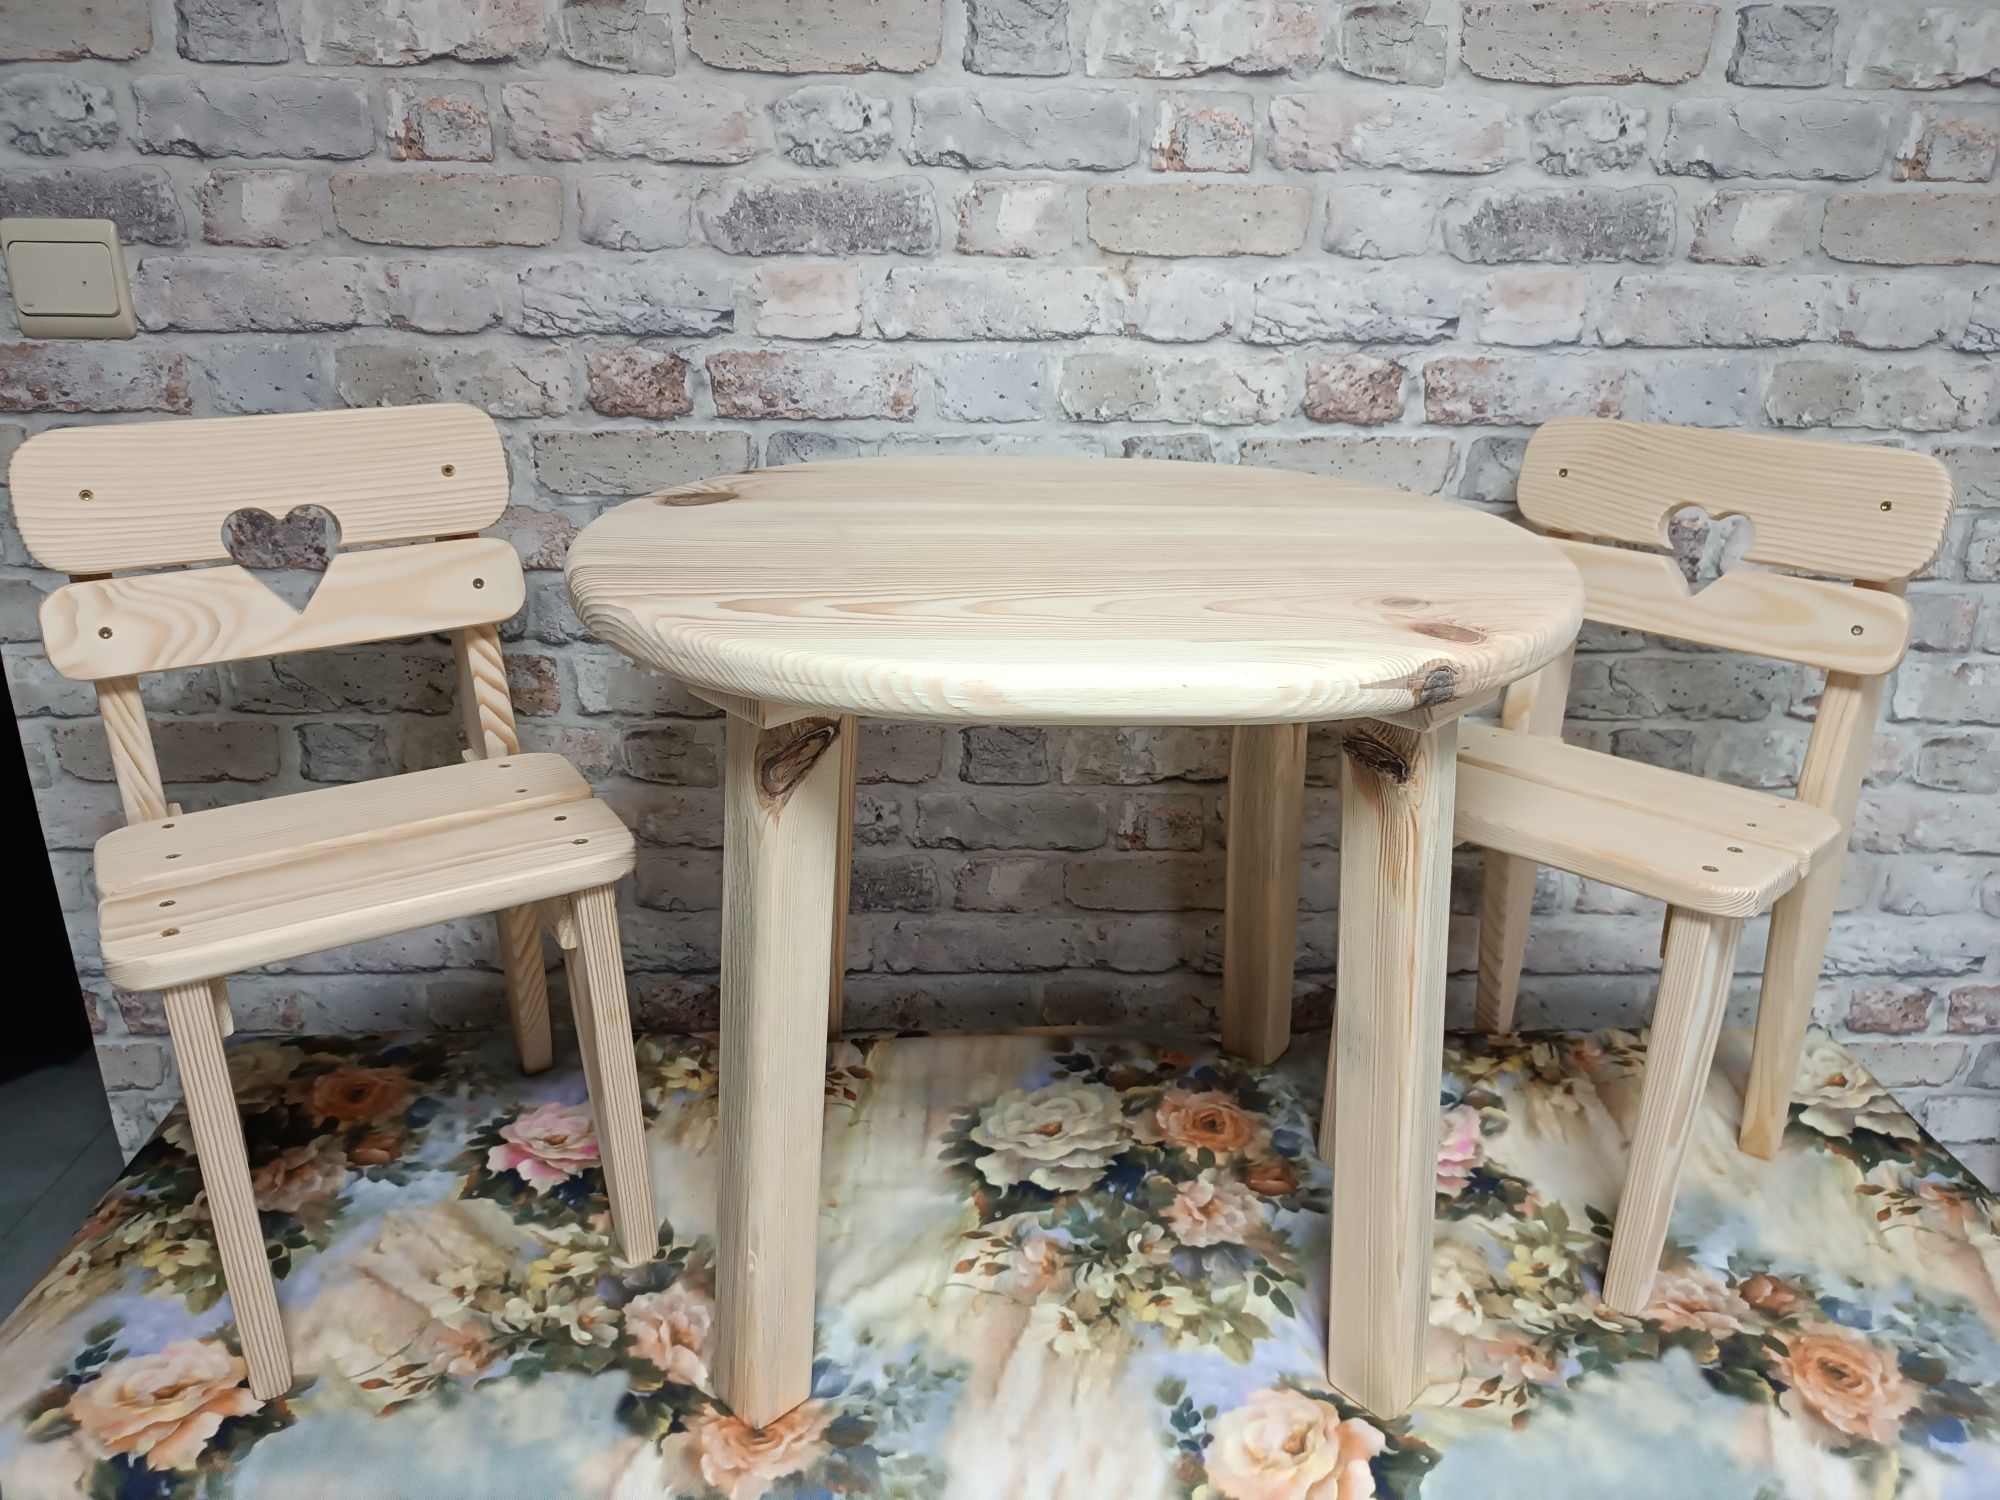 Krzesełka i stolik do domku drewnianego dziecięcego